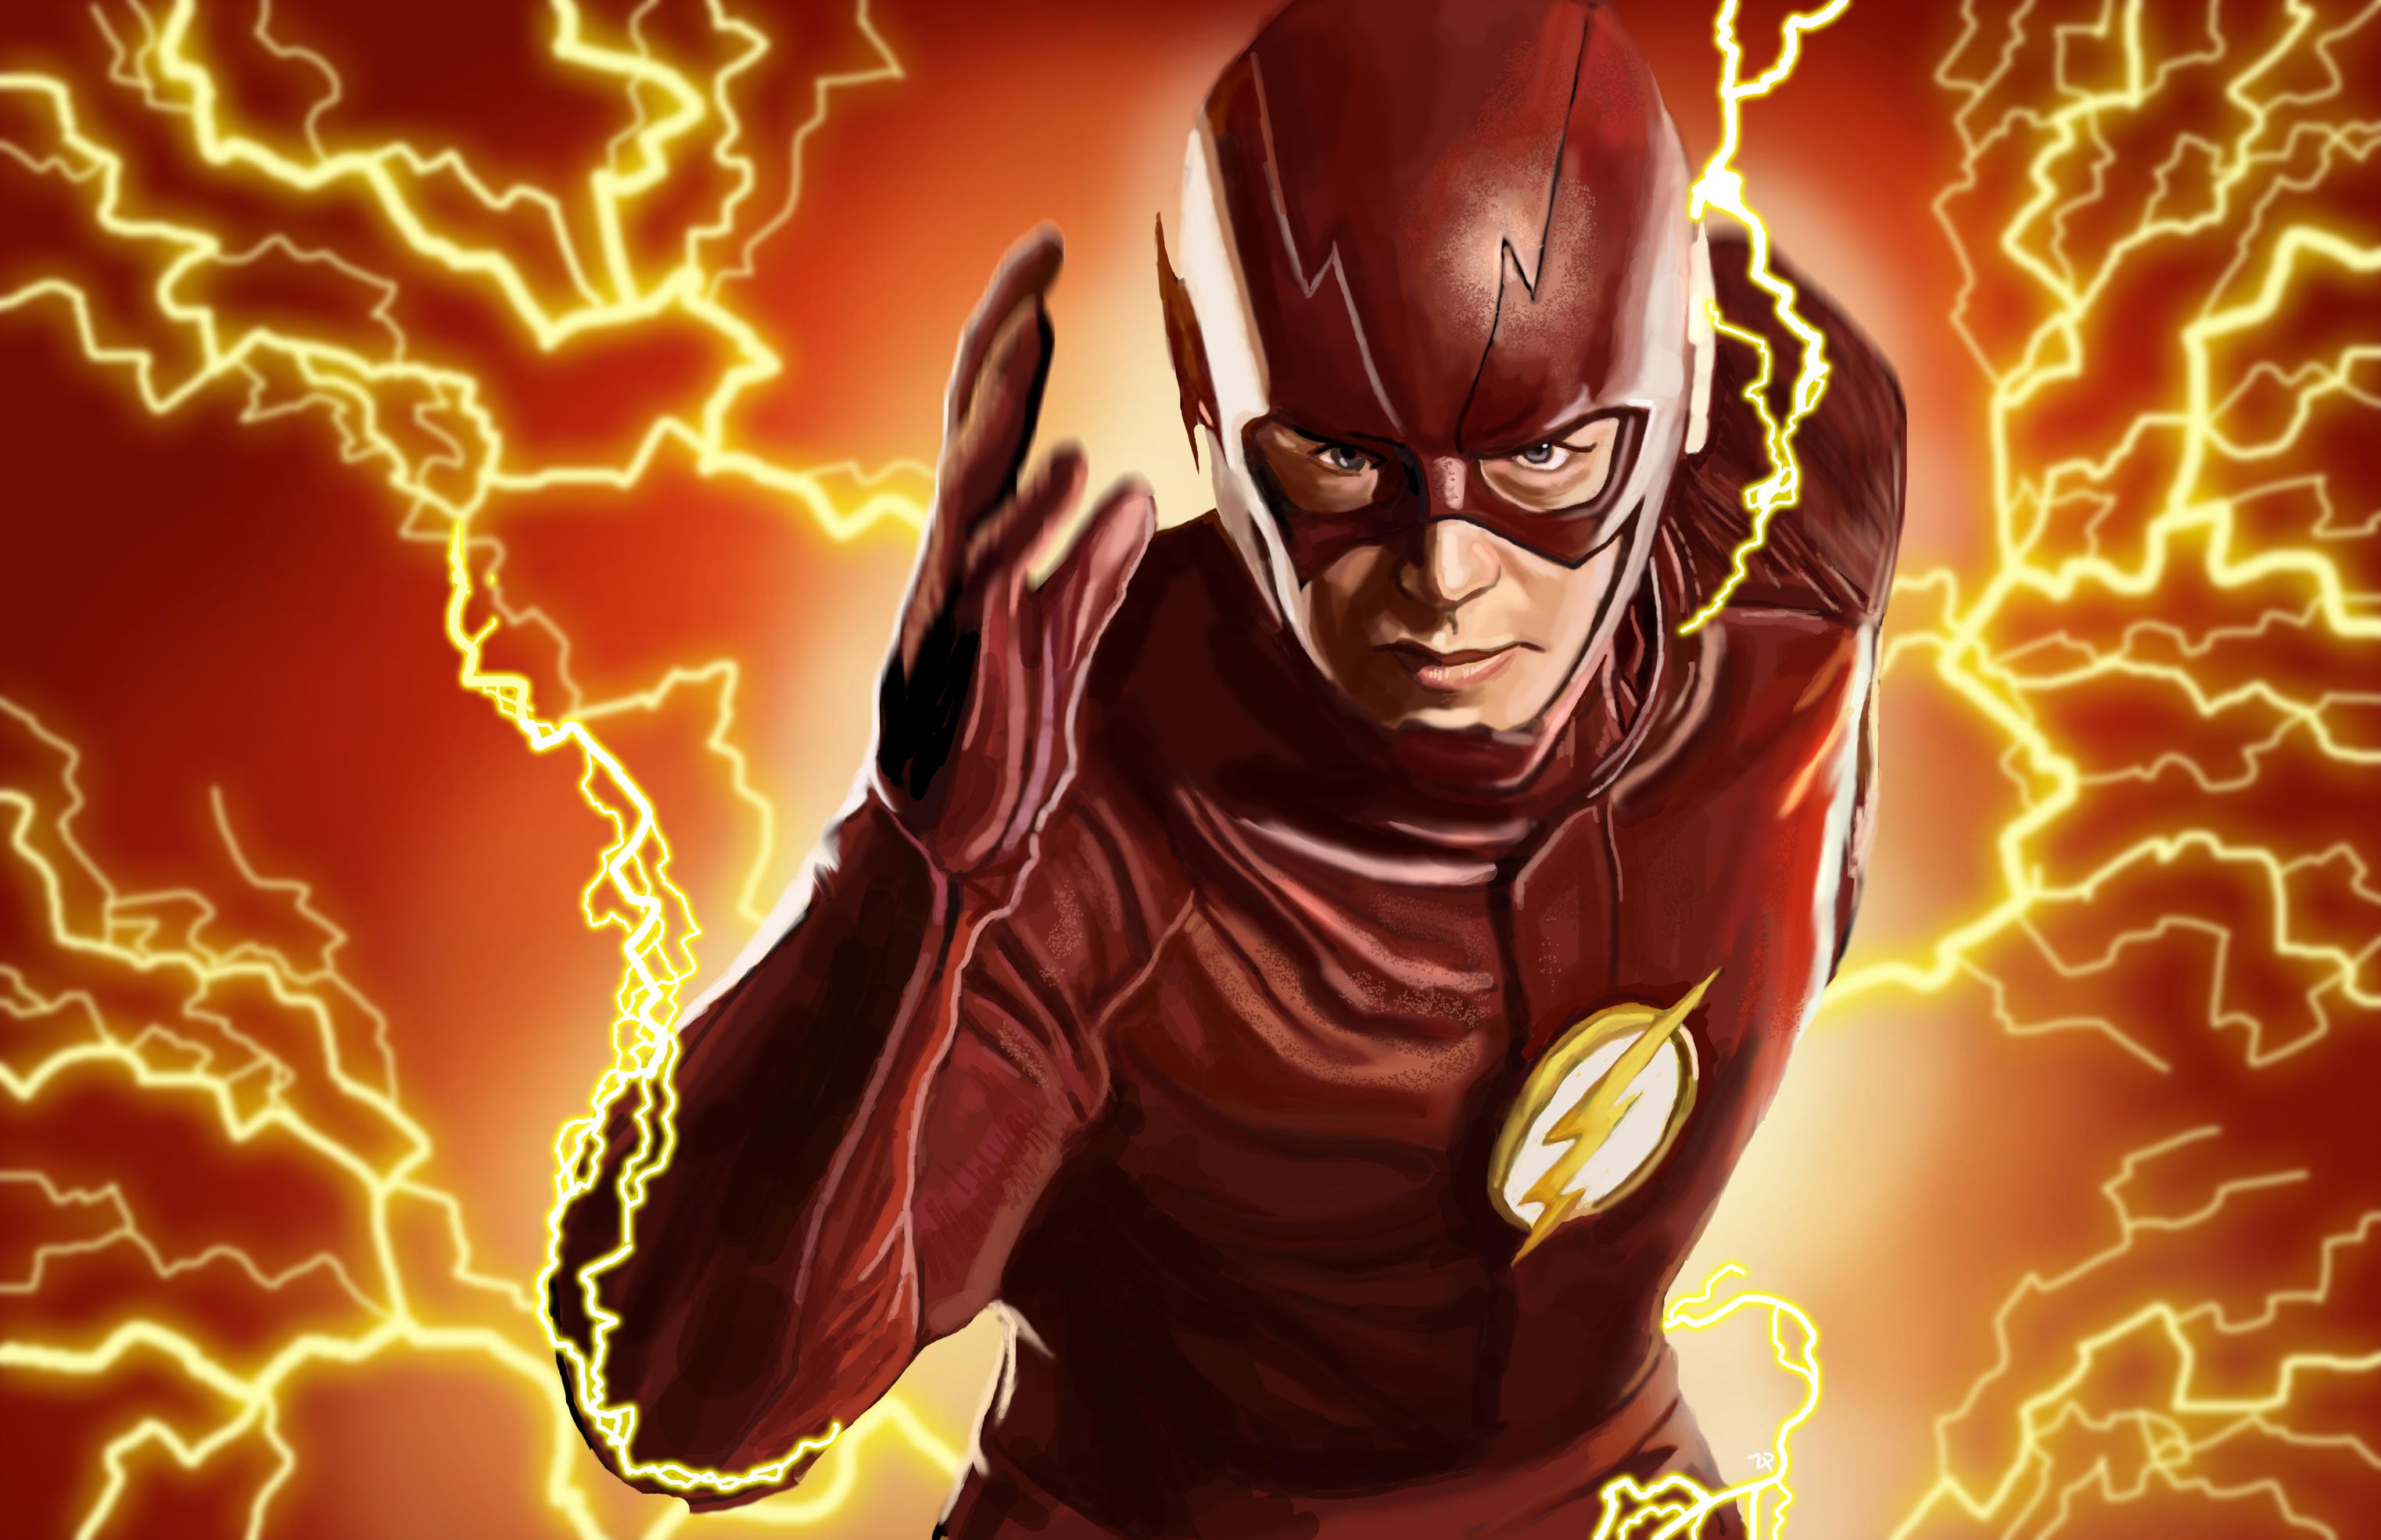 Need flash. Барри Аллен ДС. Флэш (DC Comics). Барри Аллен аватар. Barry Allen Flash.